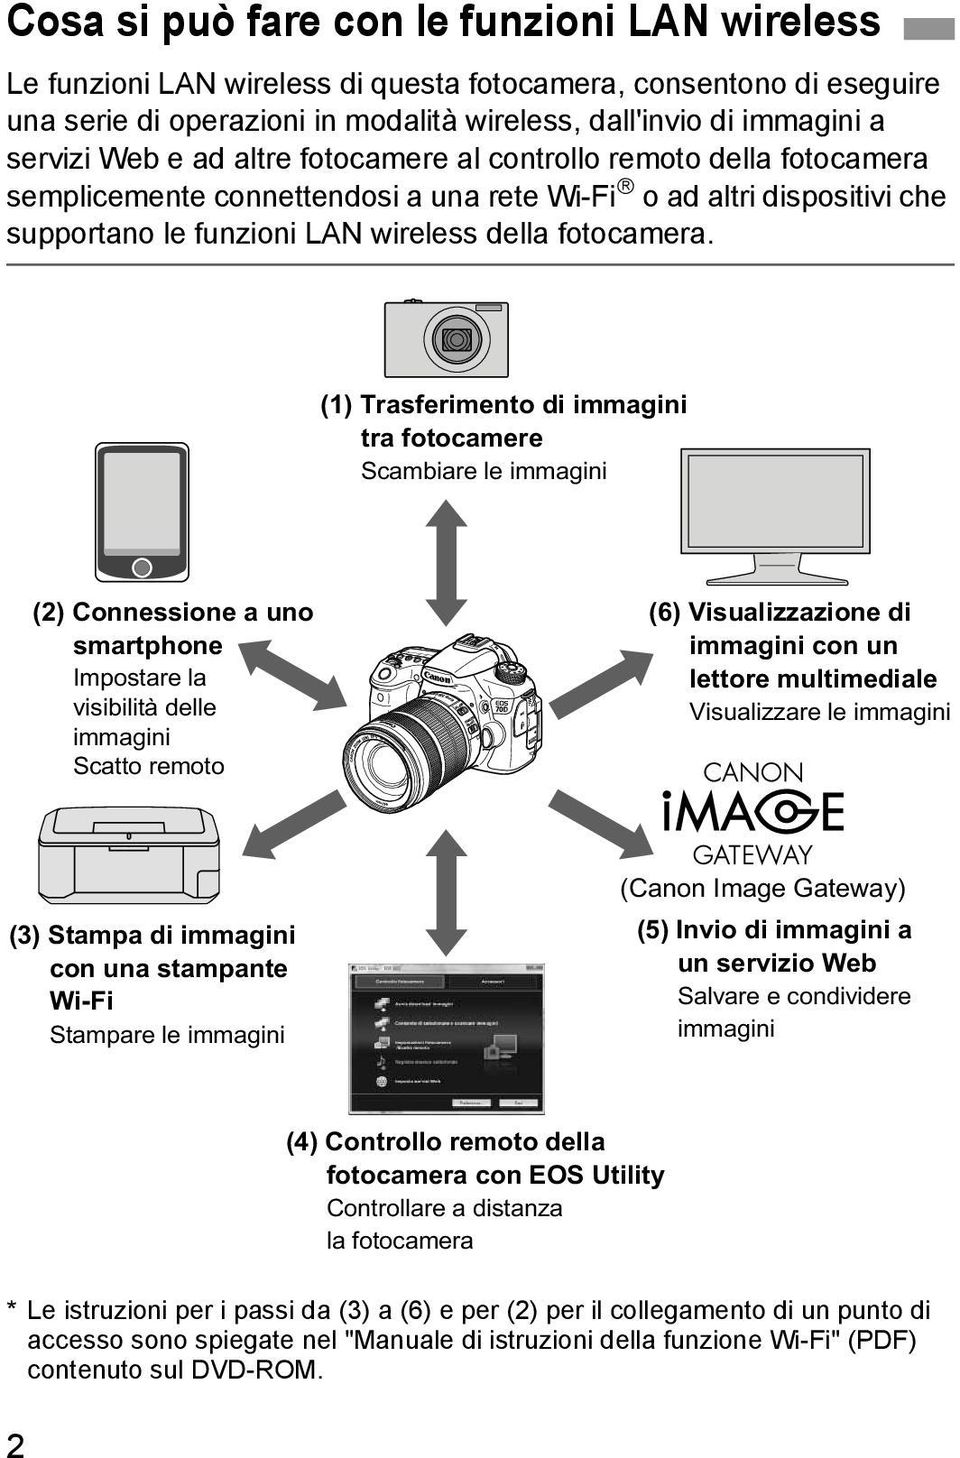 (1) Trasferimento di immagini tra fotocamere Scambiare le immagini (2) Connessione a uno smartphone Impostare la visibilità delle immagini Scatto remoto (6) Visualizzazione di immagini con un lettore